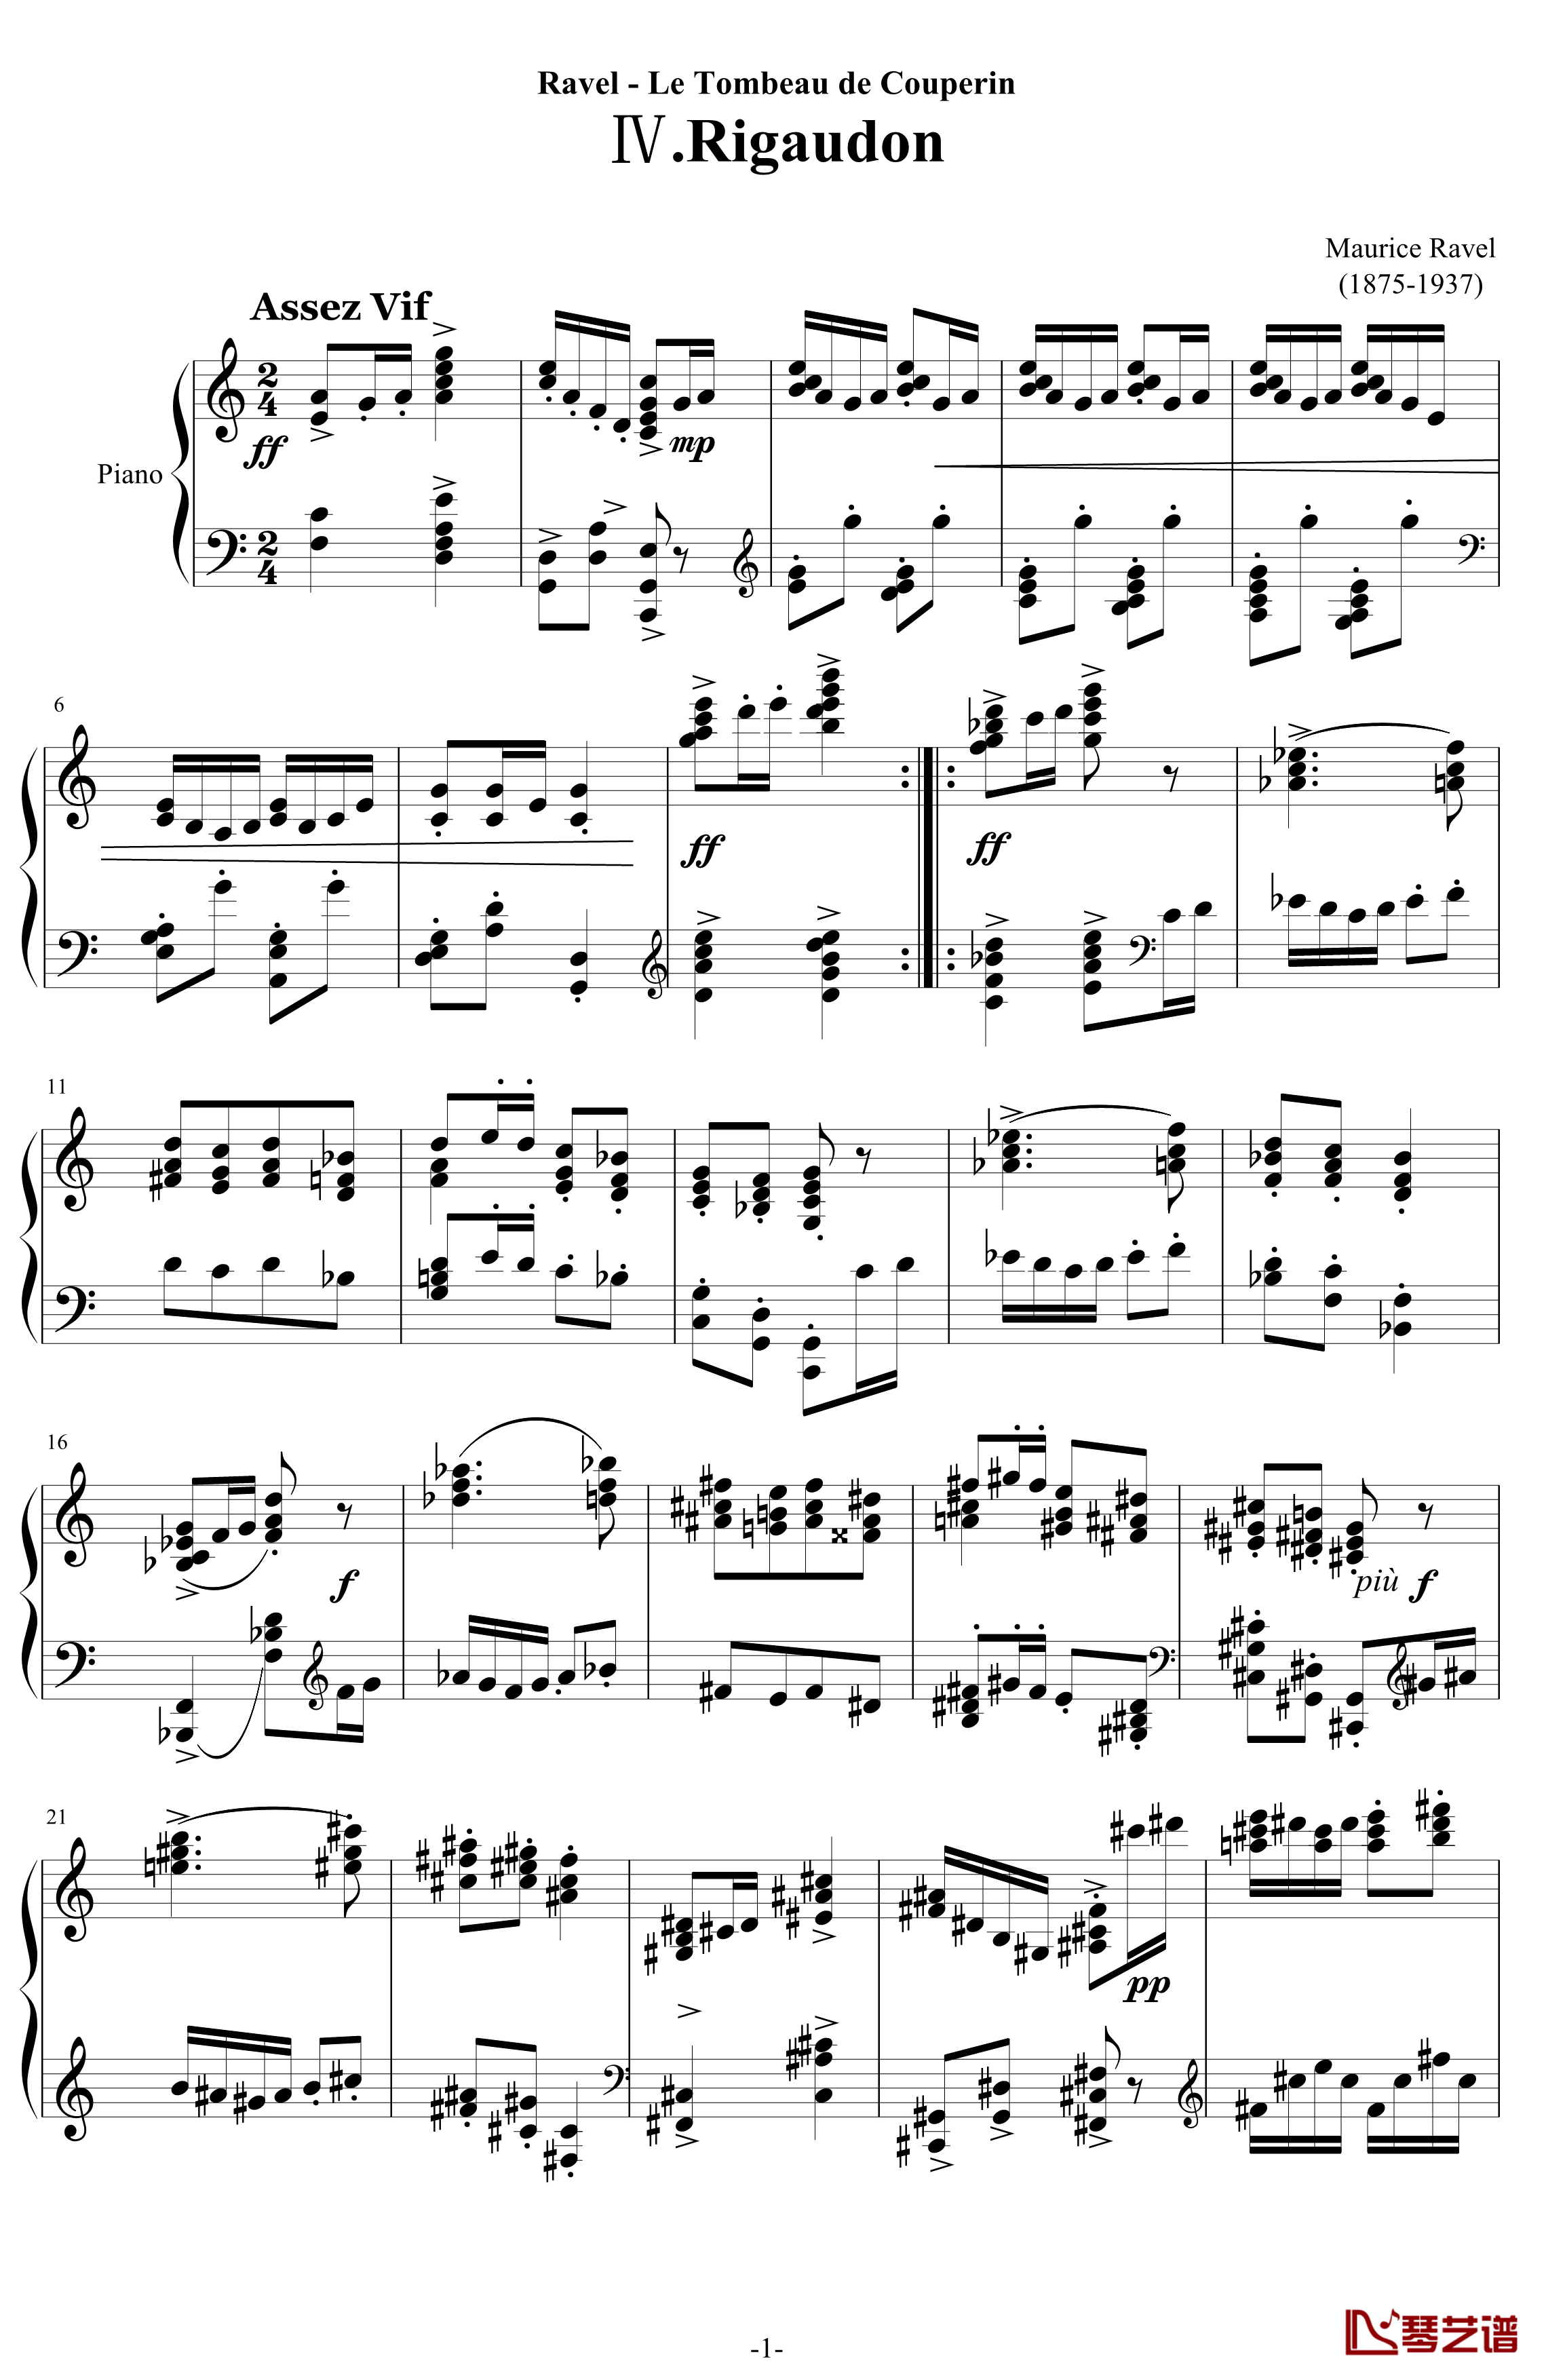 利戈顿舞曲钢琴谱-选自《库普兰之墓》-拉威尔-Ravel1